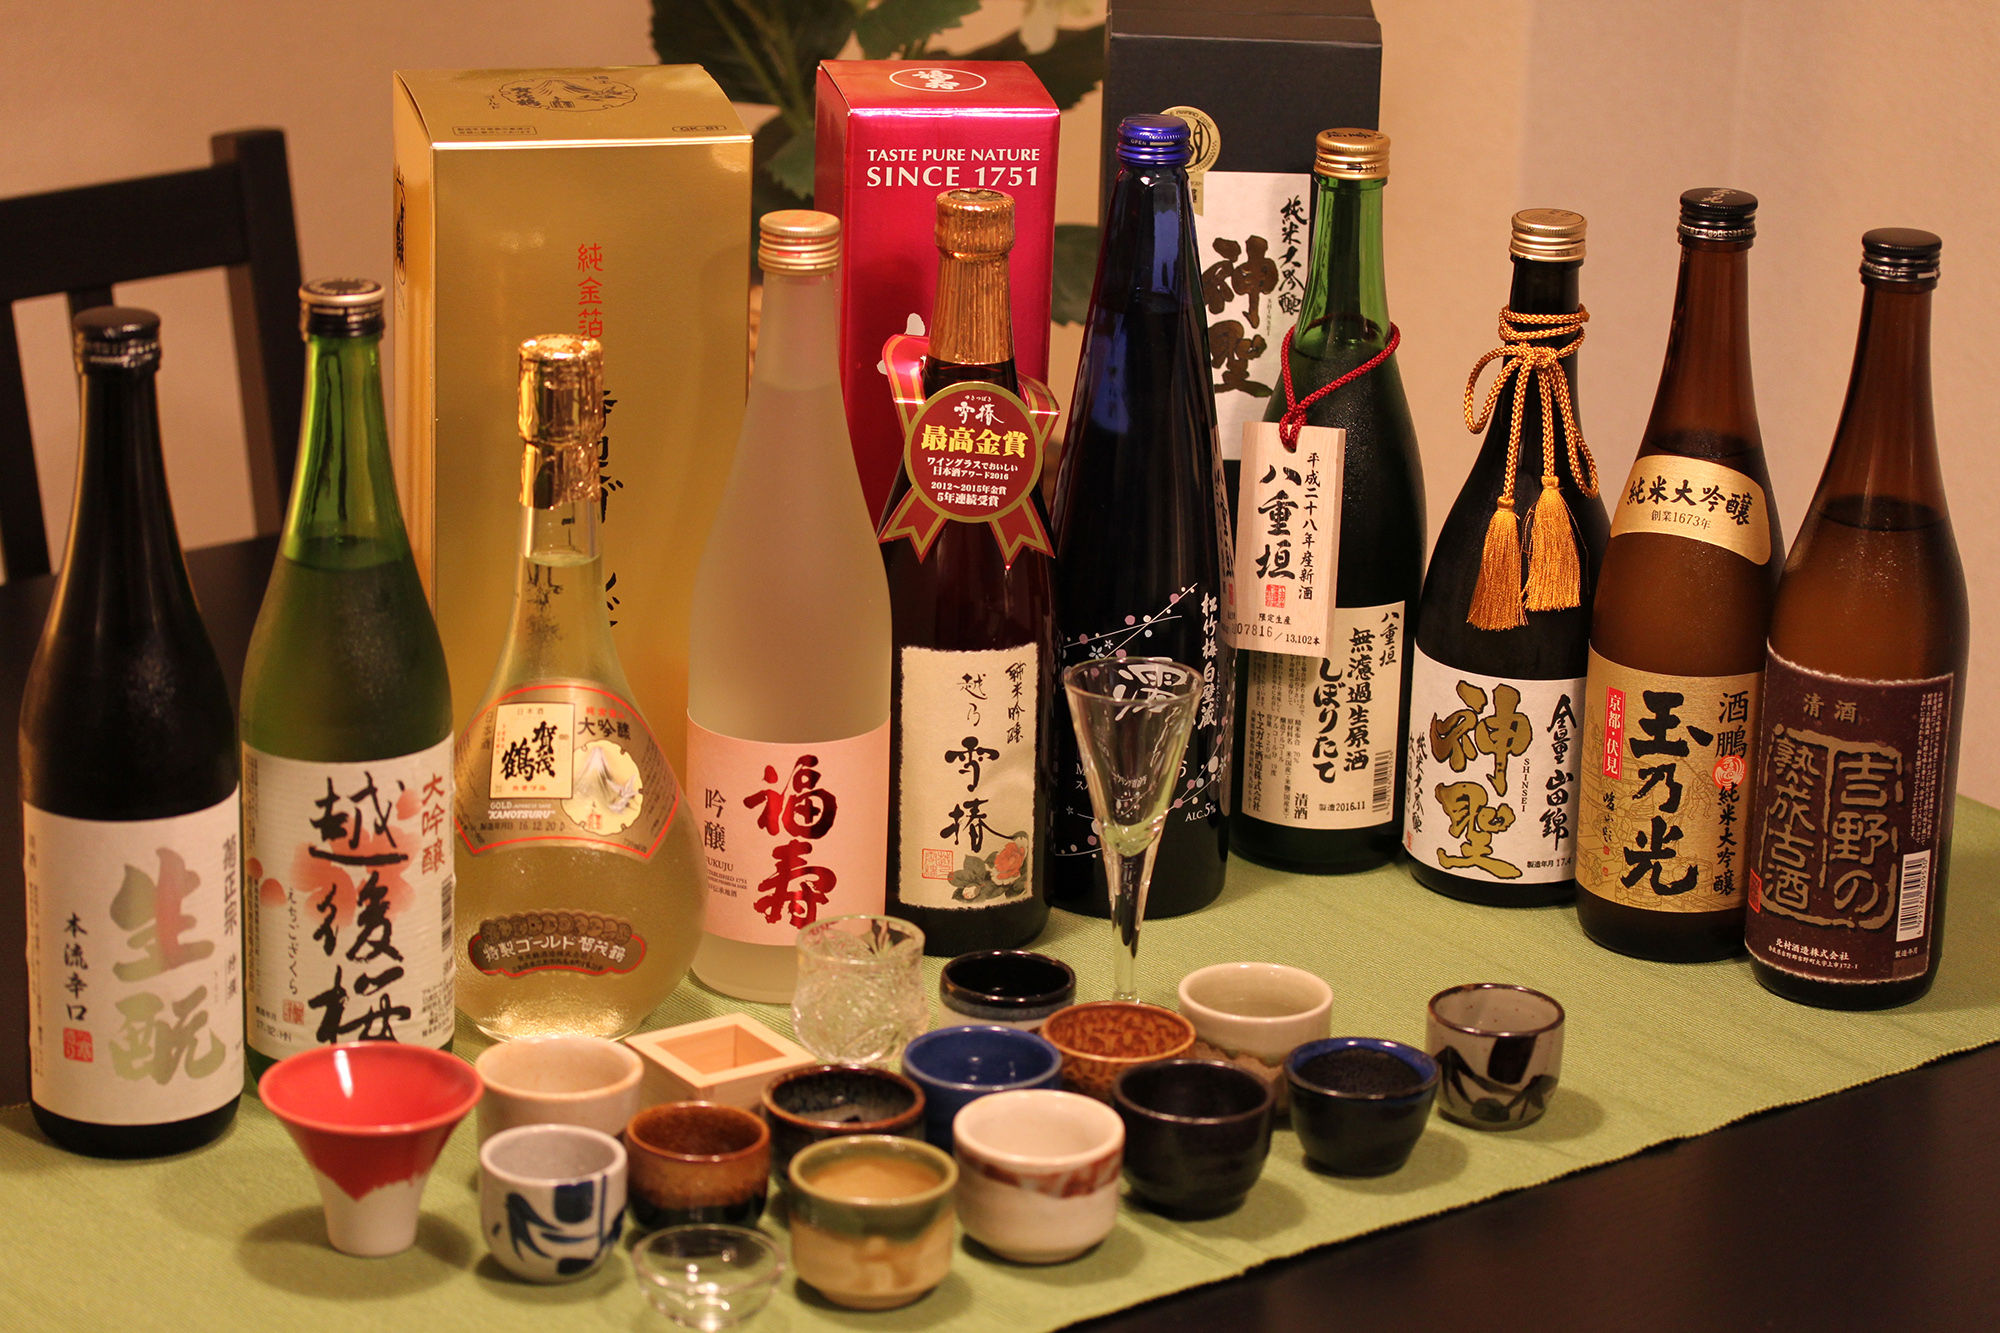 rượu Sake Nhật Bản